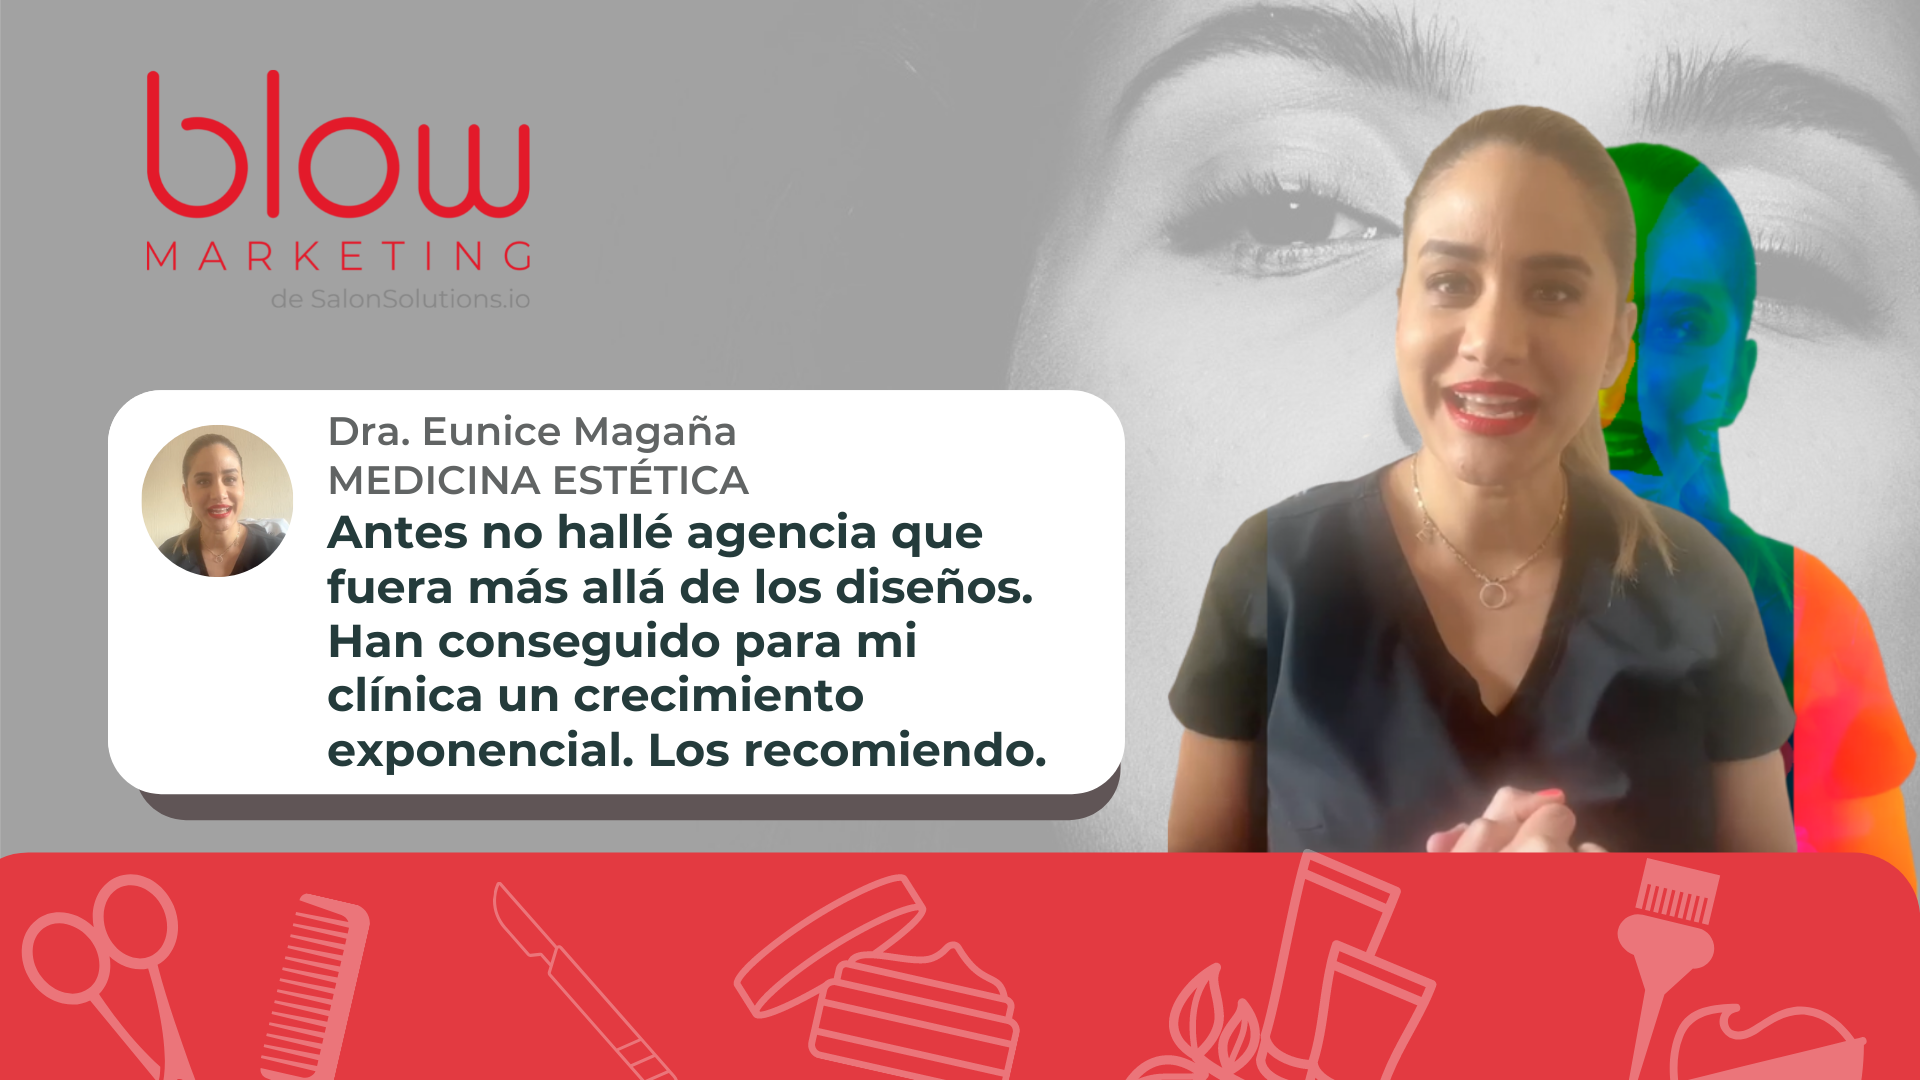 Haz clic para reproducir videotestimonio de Dra Eunice Magaña